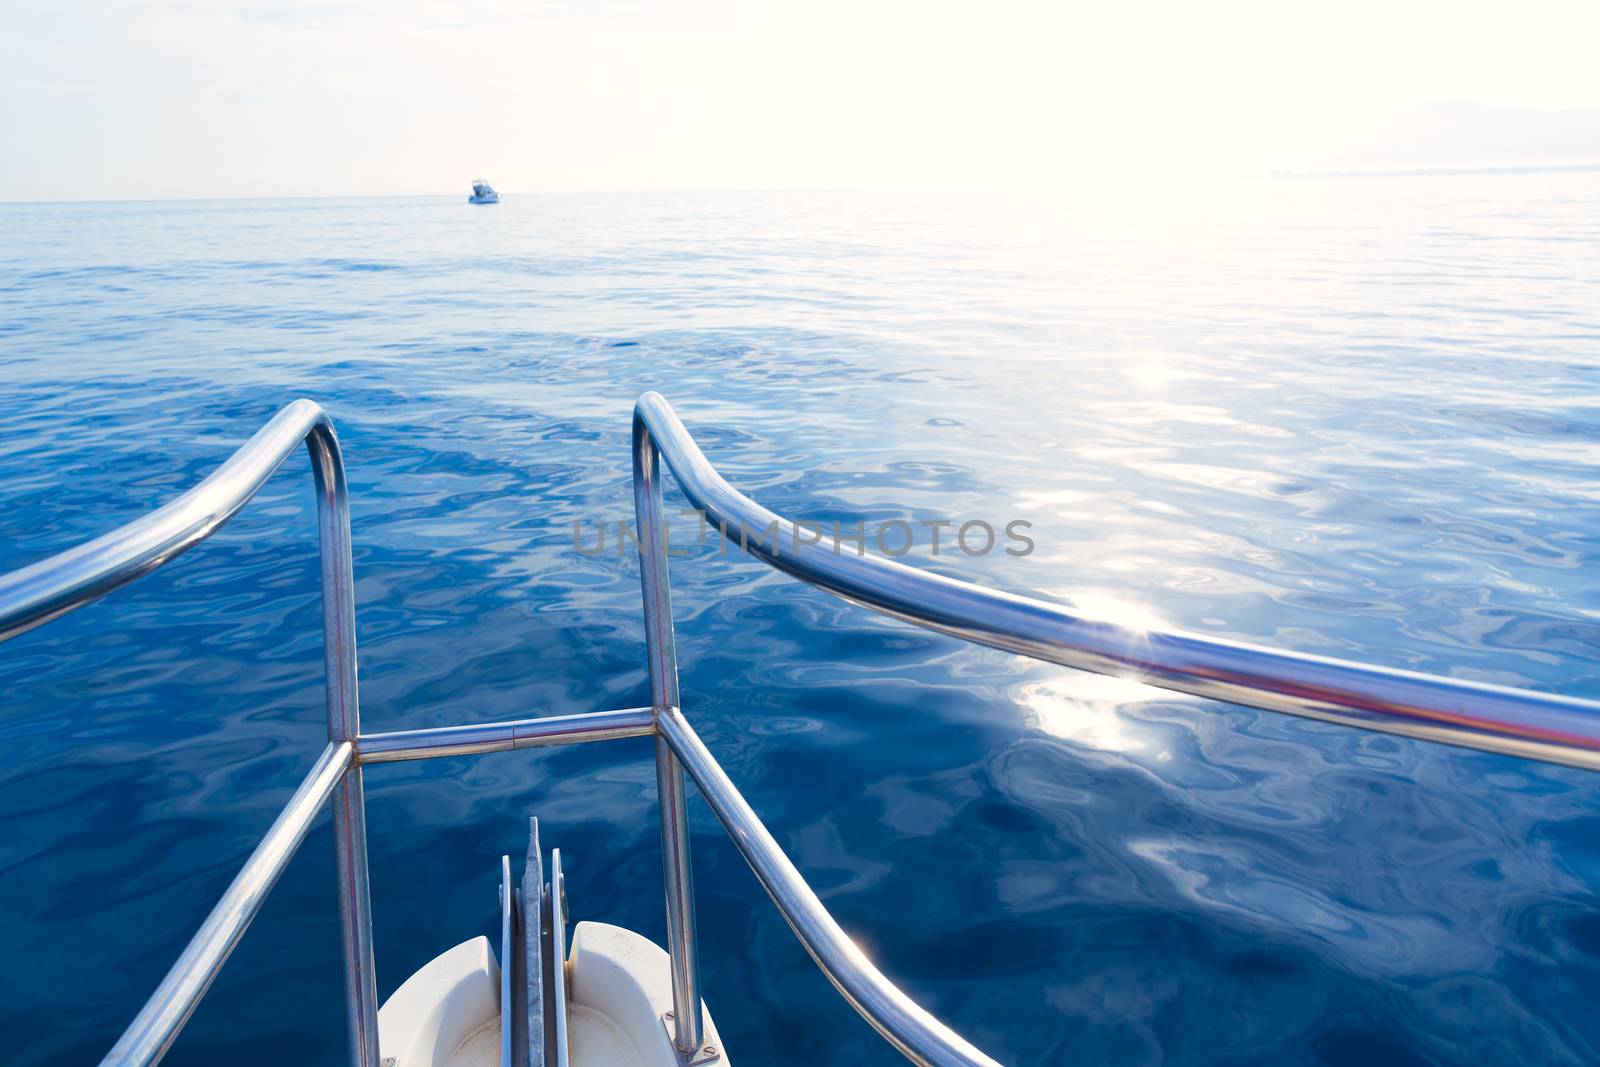 Boat bow sailing in blue calm sea ocean at blue Mediterranean